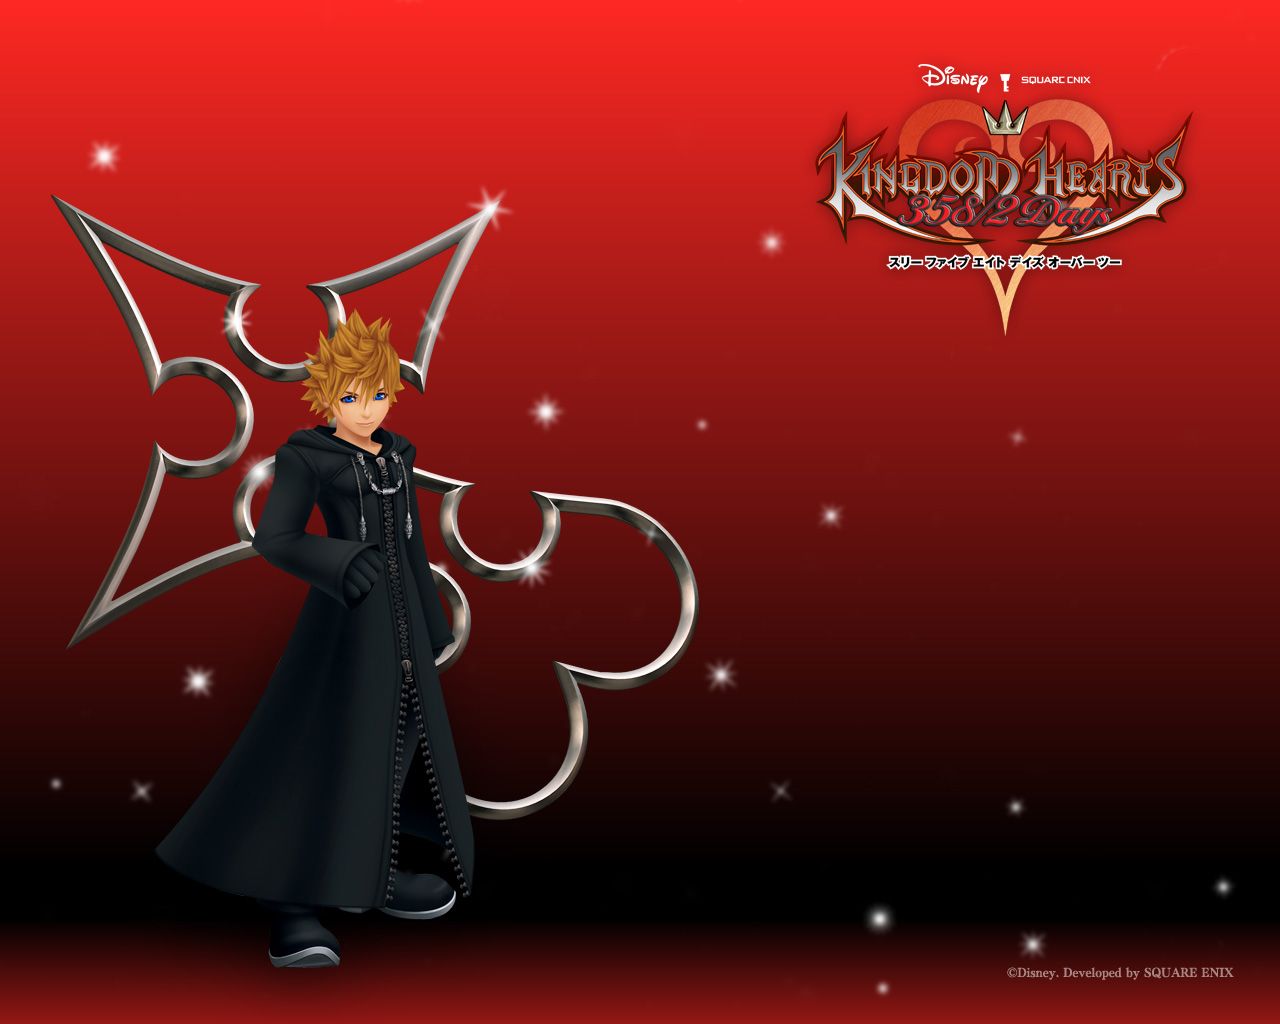 Kingdom Hearts 358/2 Days/#213022 - Zerochan